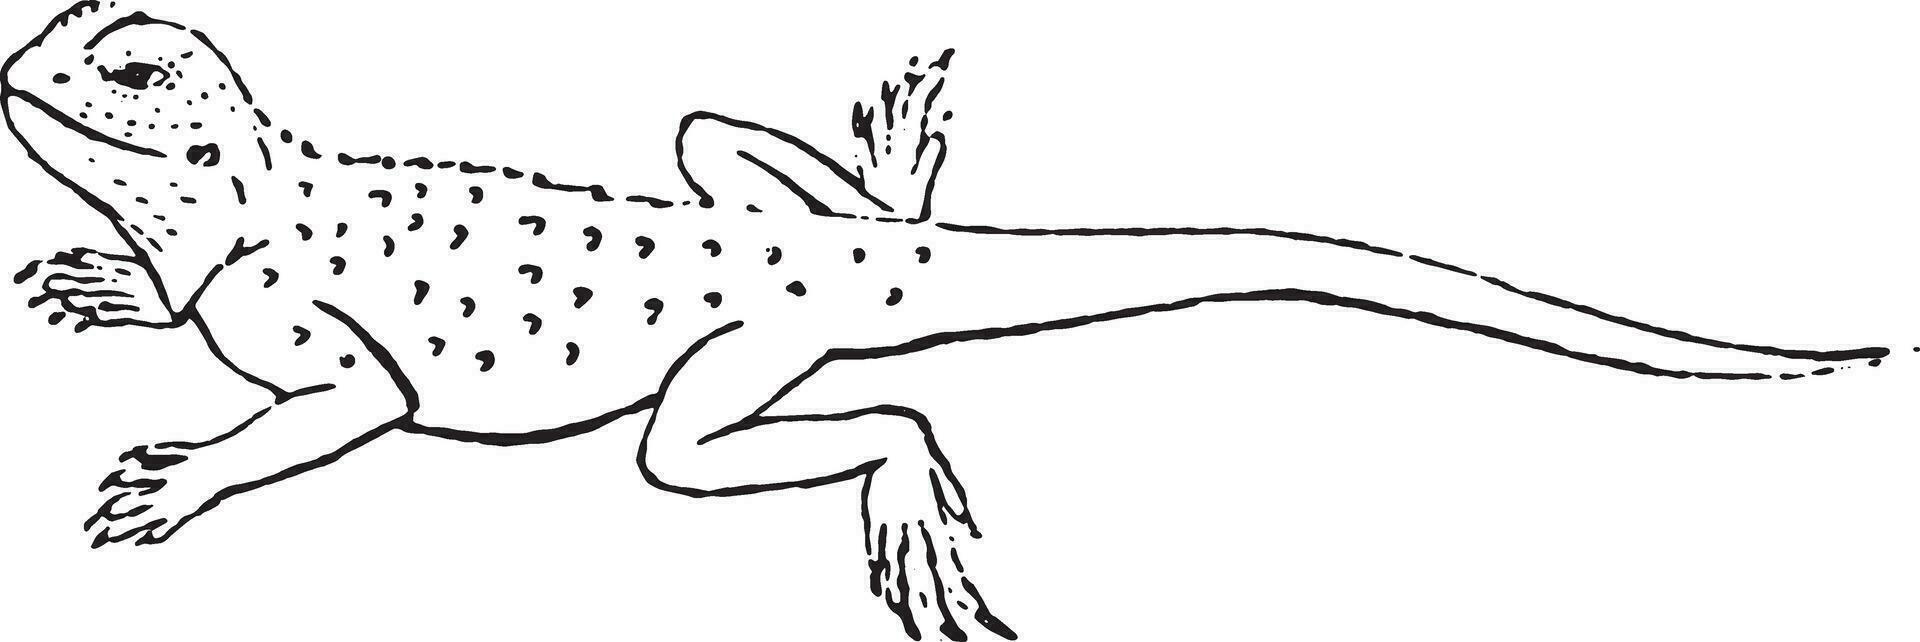 agama lagartija de el género, Clásico grabado. vector